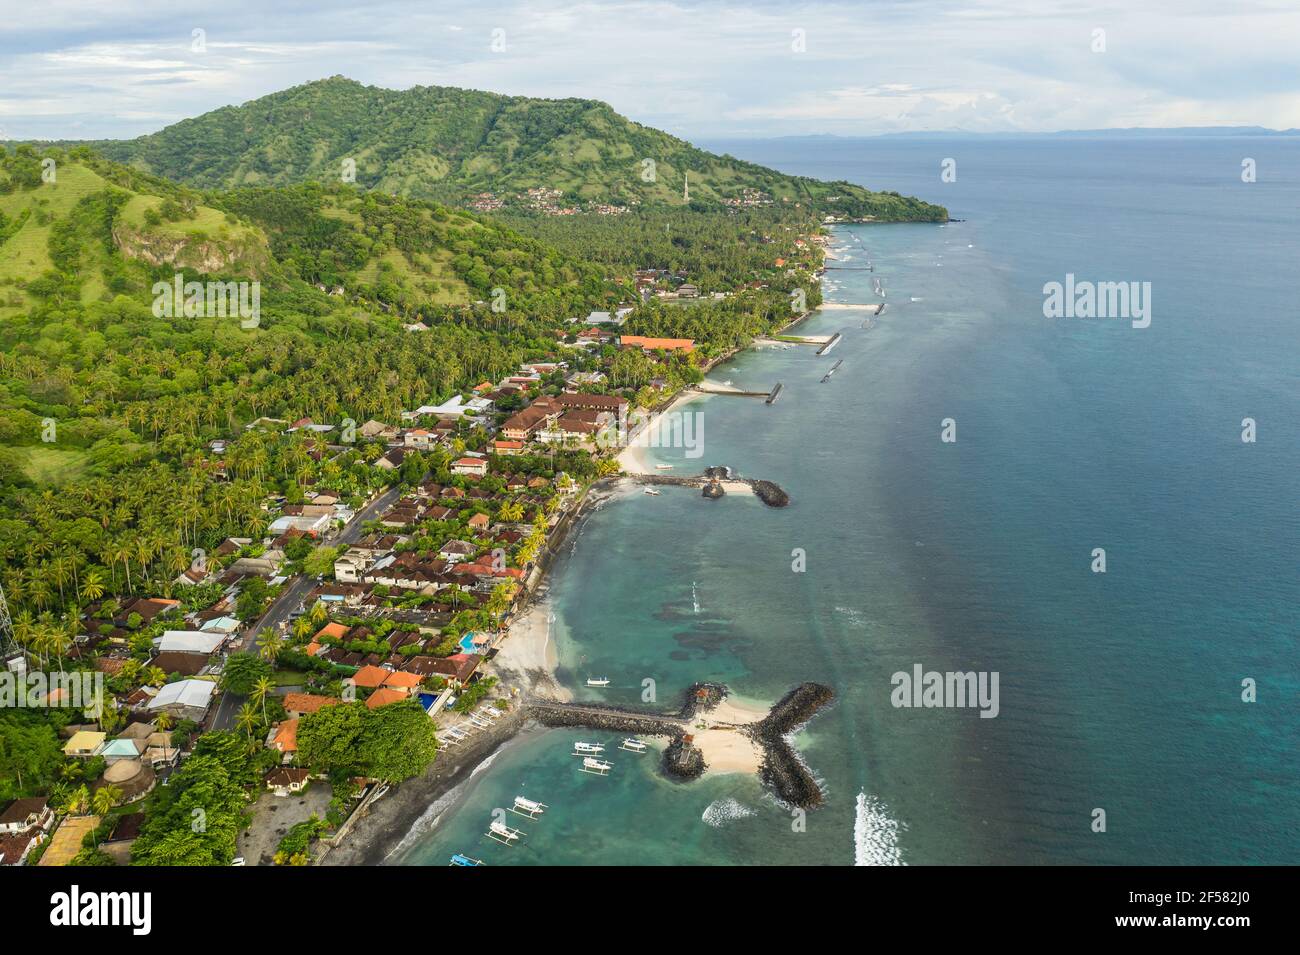 Vue aérienne de la ville et de la plage de Candidasa dans l'est de Bali en Indonésie. C'est une station balnéaire populaire. Banque D'Images